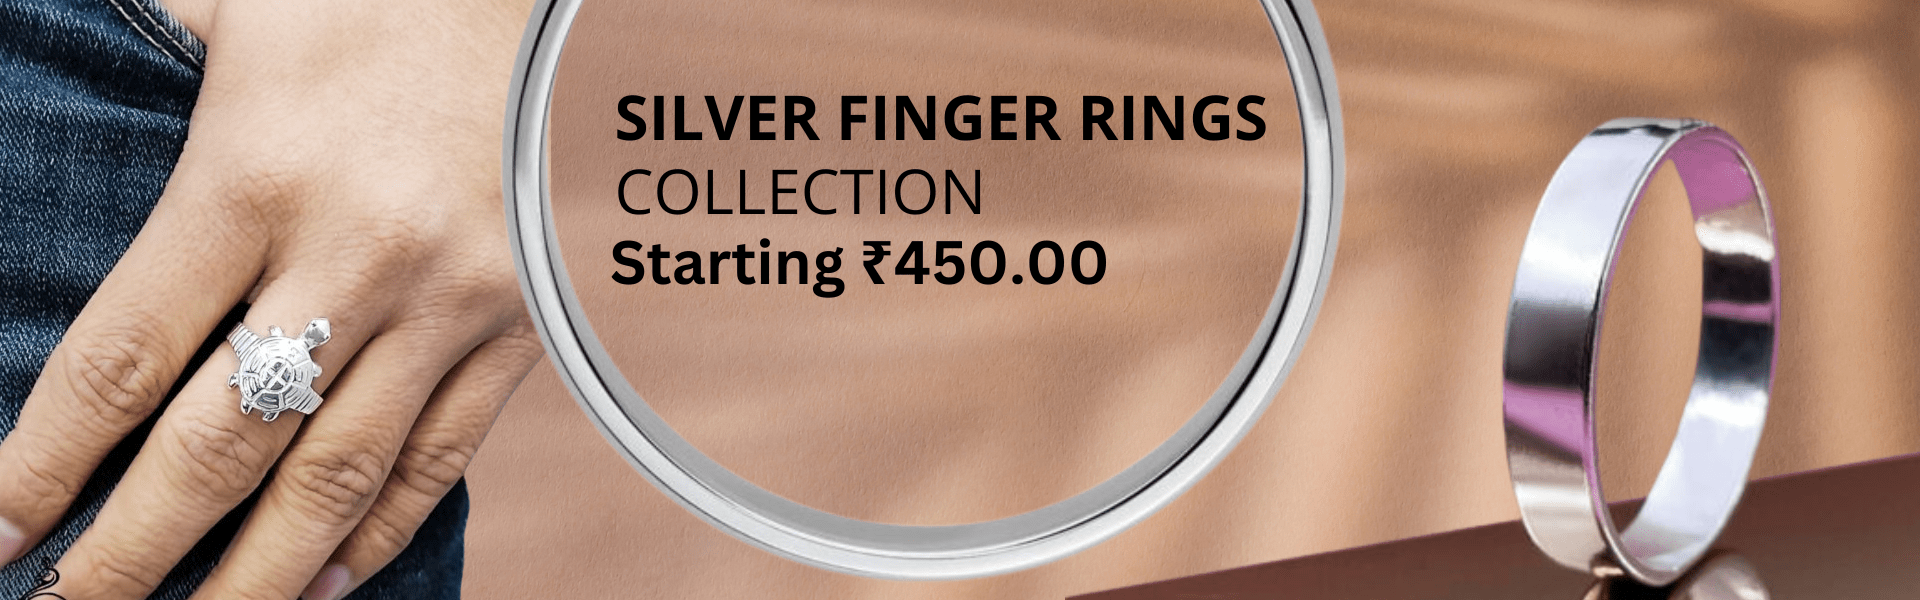 silver finger rings online